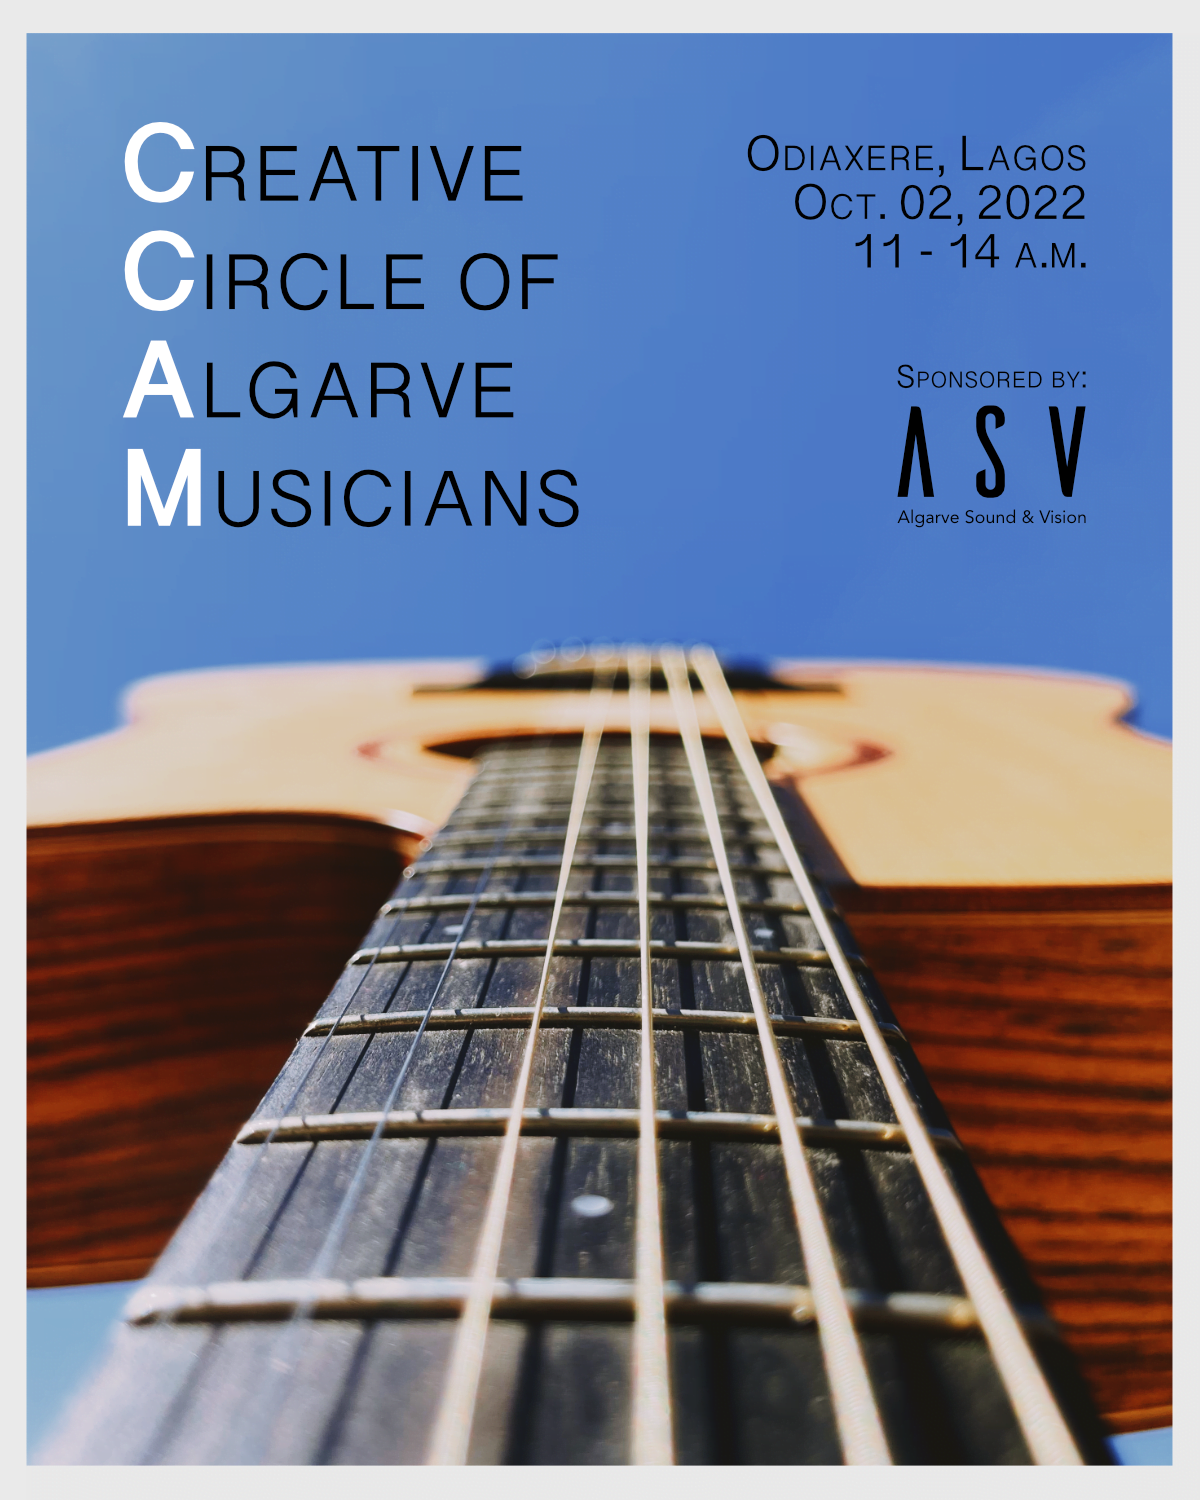 CCAM - Círculo Criativo de Músicos do Algarve